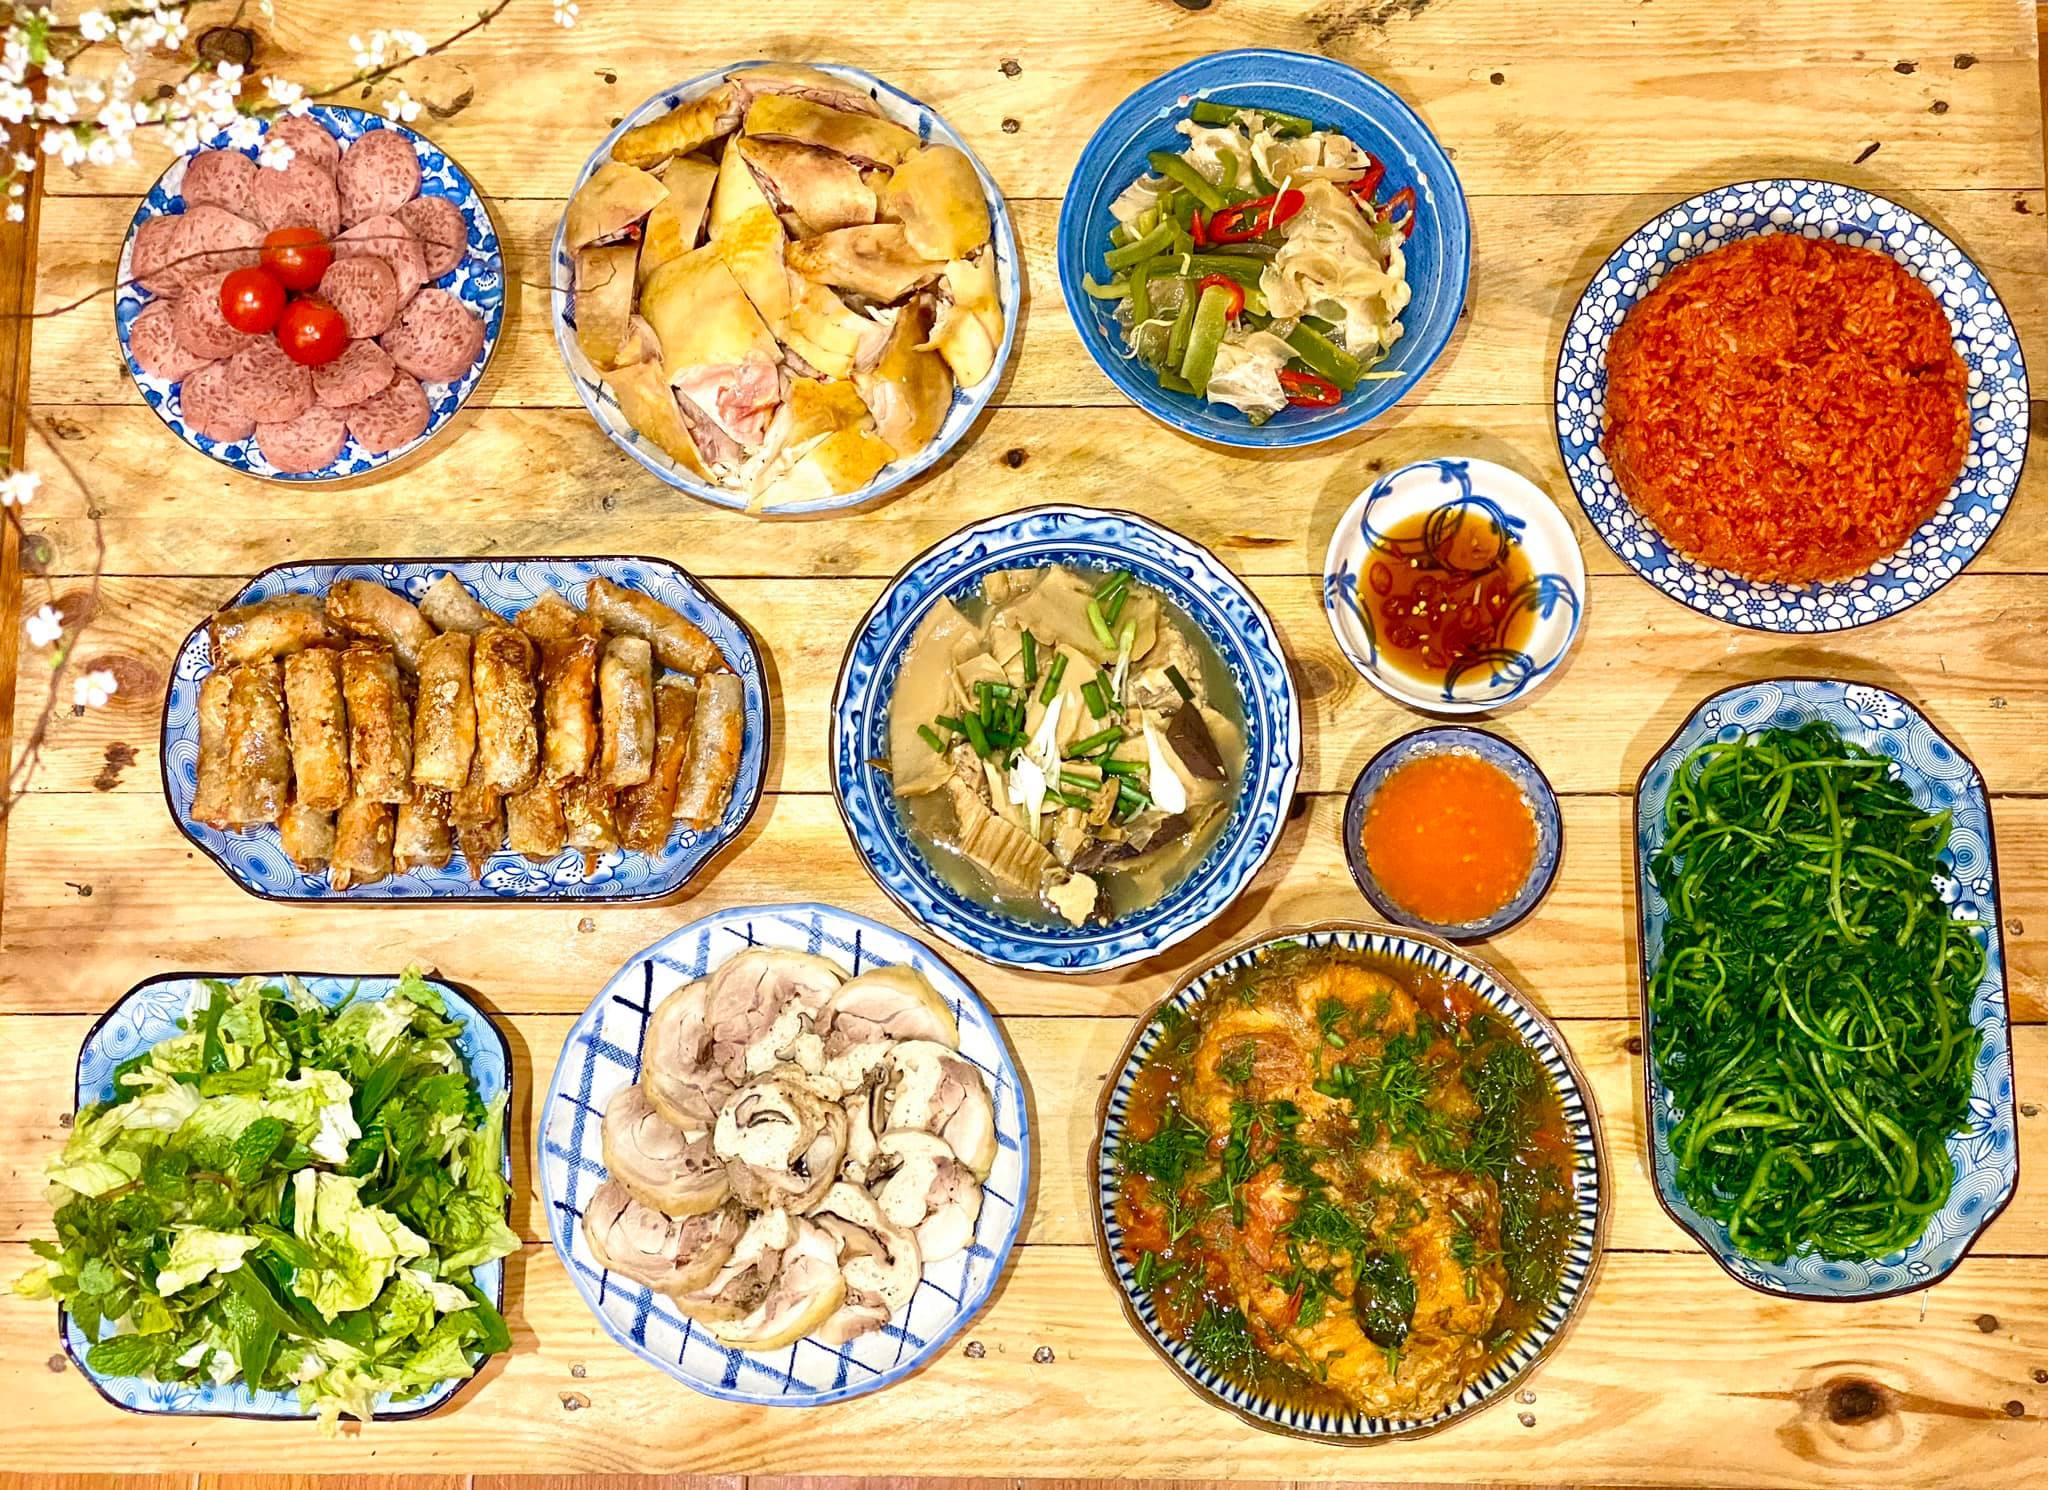 Mâm Cơm: Bữa ăn là thời khắc quan trọng để tận hưởng cuộc sống, và mâm cơm luôn là một phần không thể thiếu. Hãy cùng ngắm nhìn những bức ảnh về các món ăn đậm chất truyền thống Việt Nam, sẽ khiến bạn muốn xuống bếp ngay lập tức.